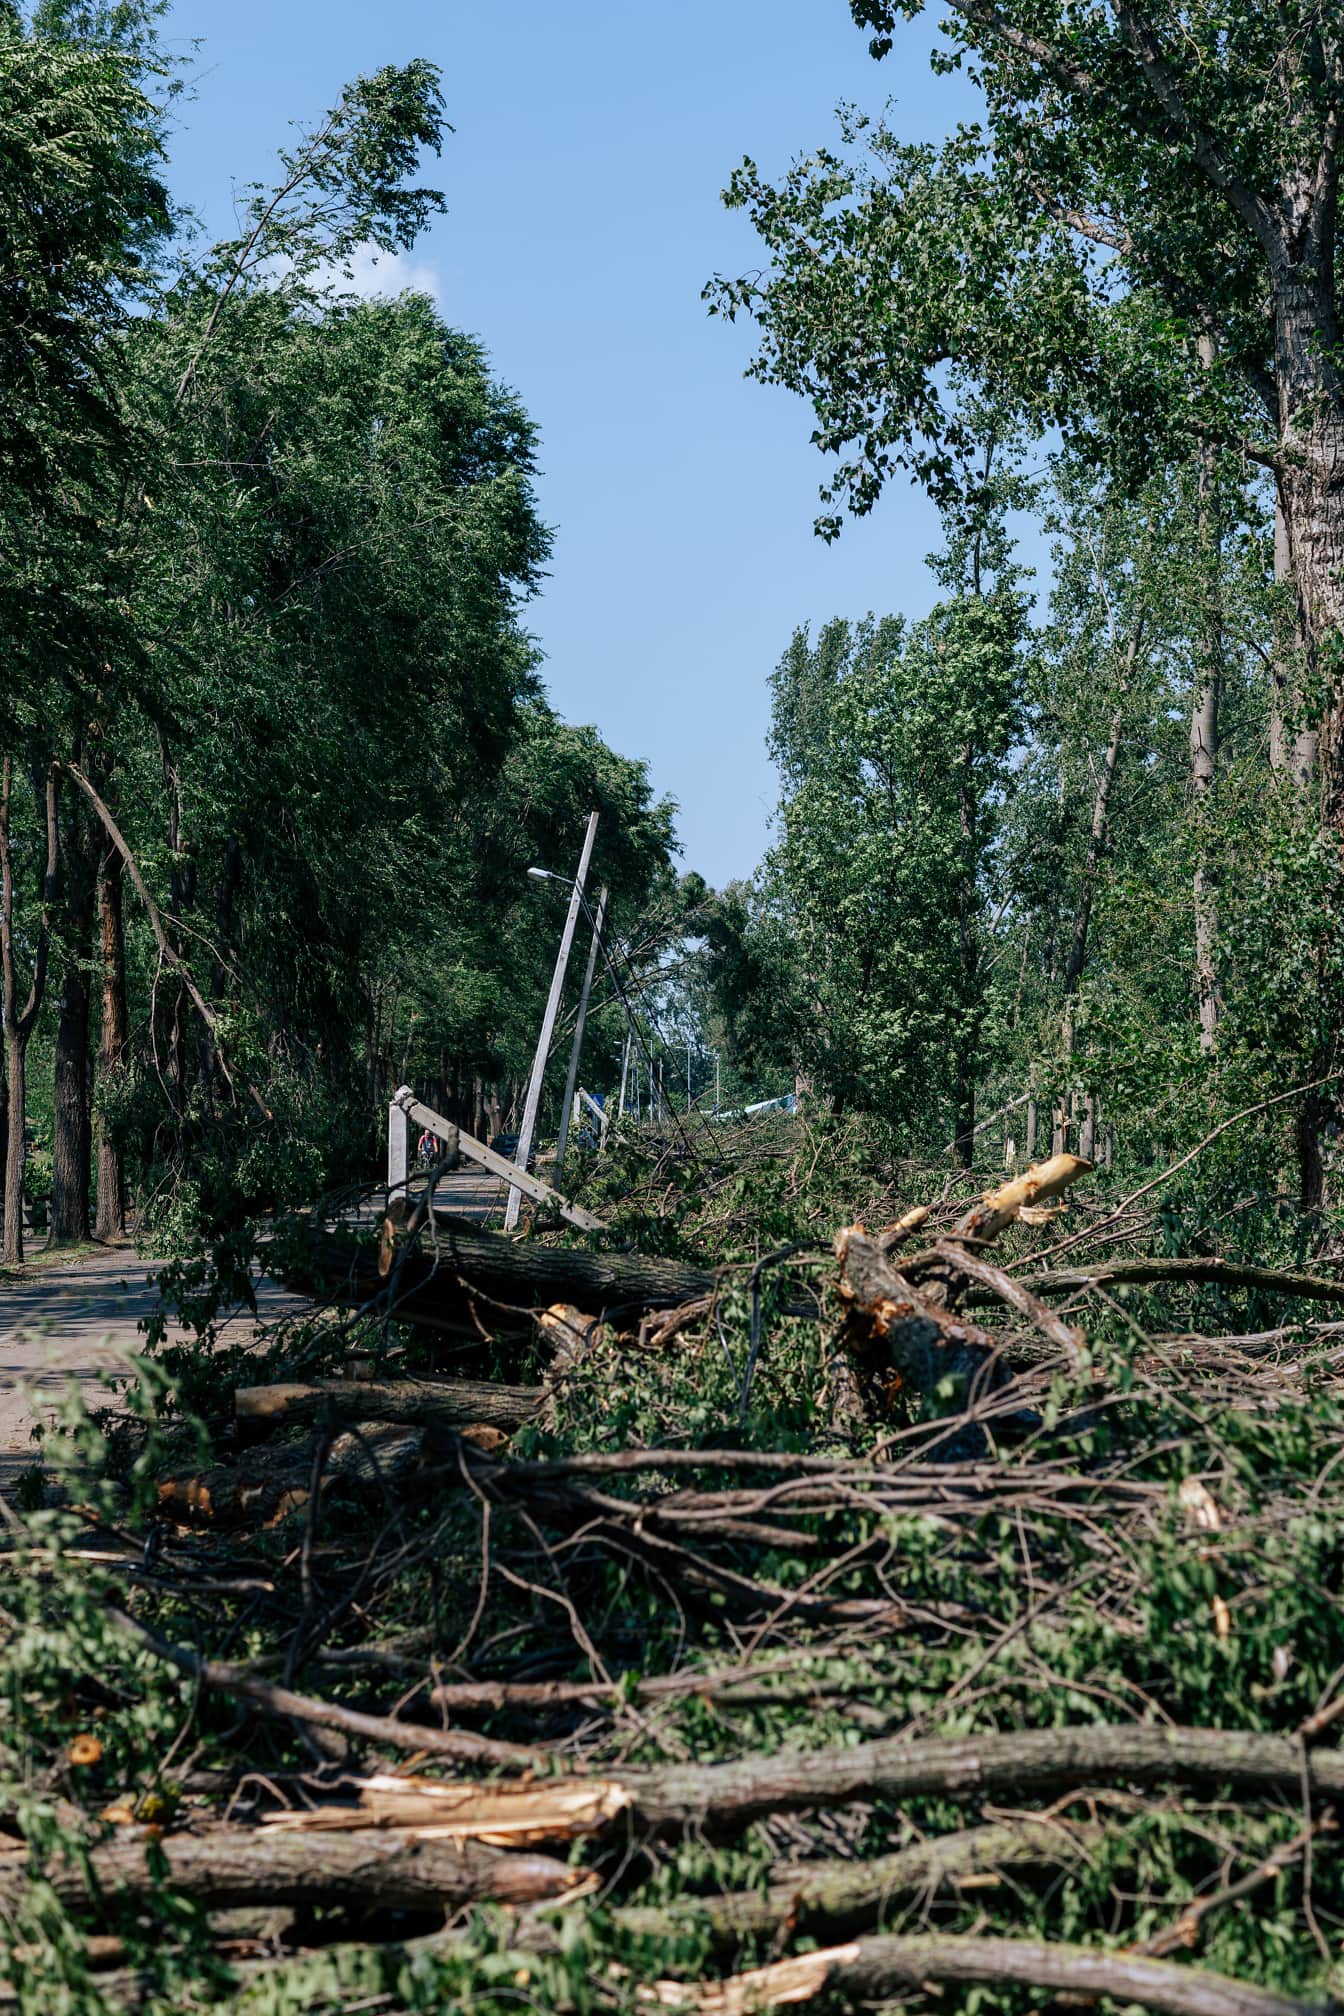 Hurikán poškodil kmeny stromů a telefonní sloup